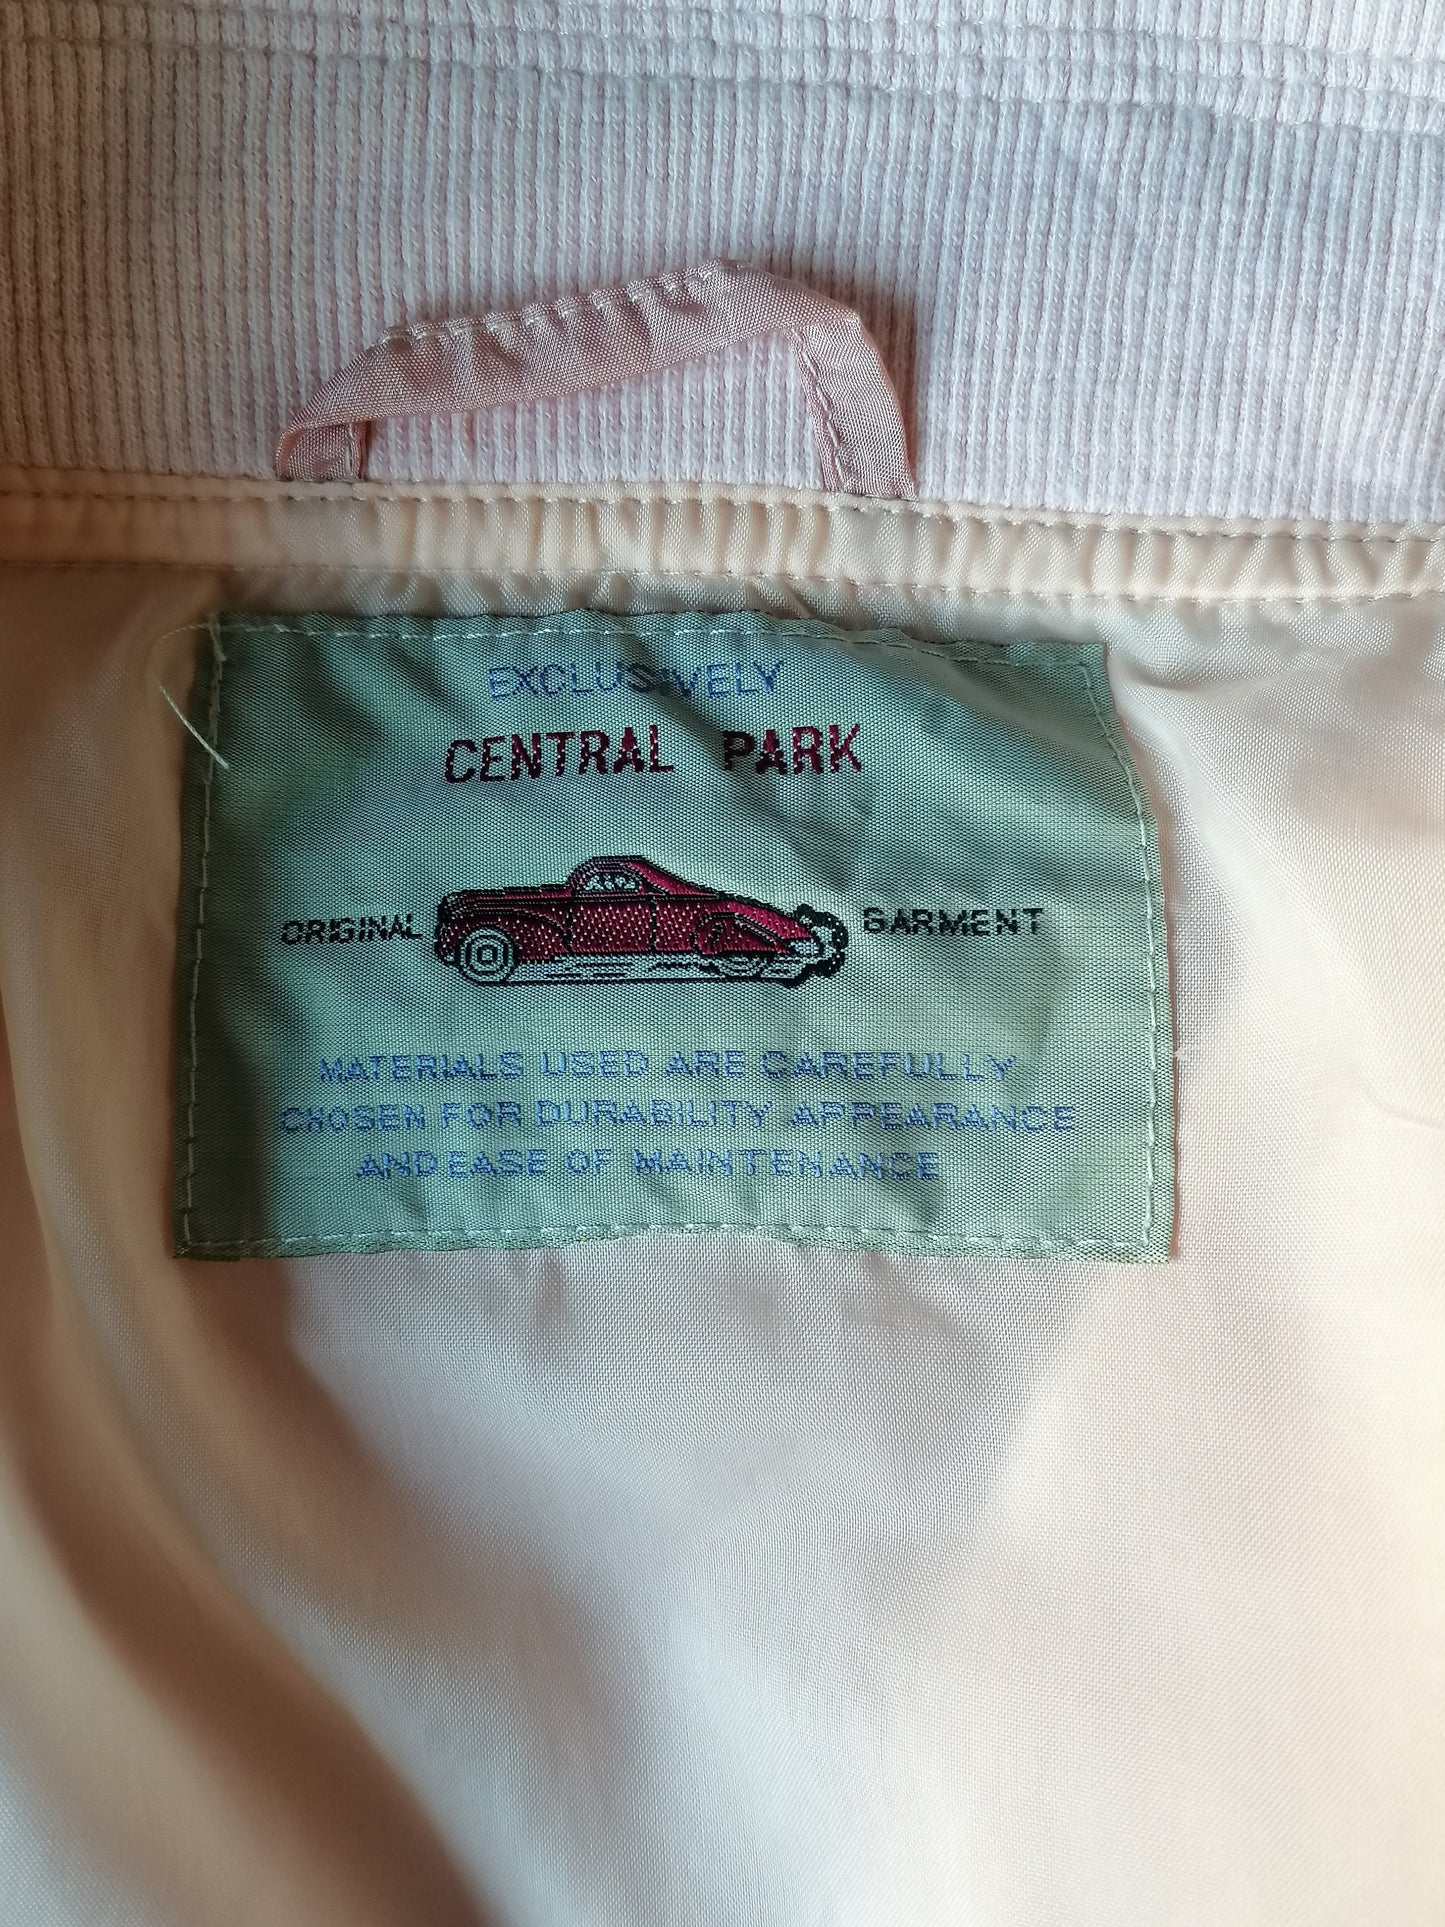 Vintage Central Park 80S-90-Trainingsjacke mit Schulterfüllungen. Rosa gefärbt. Größe xxl / 2xl.